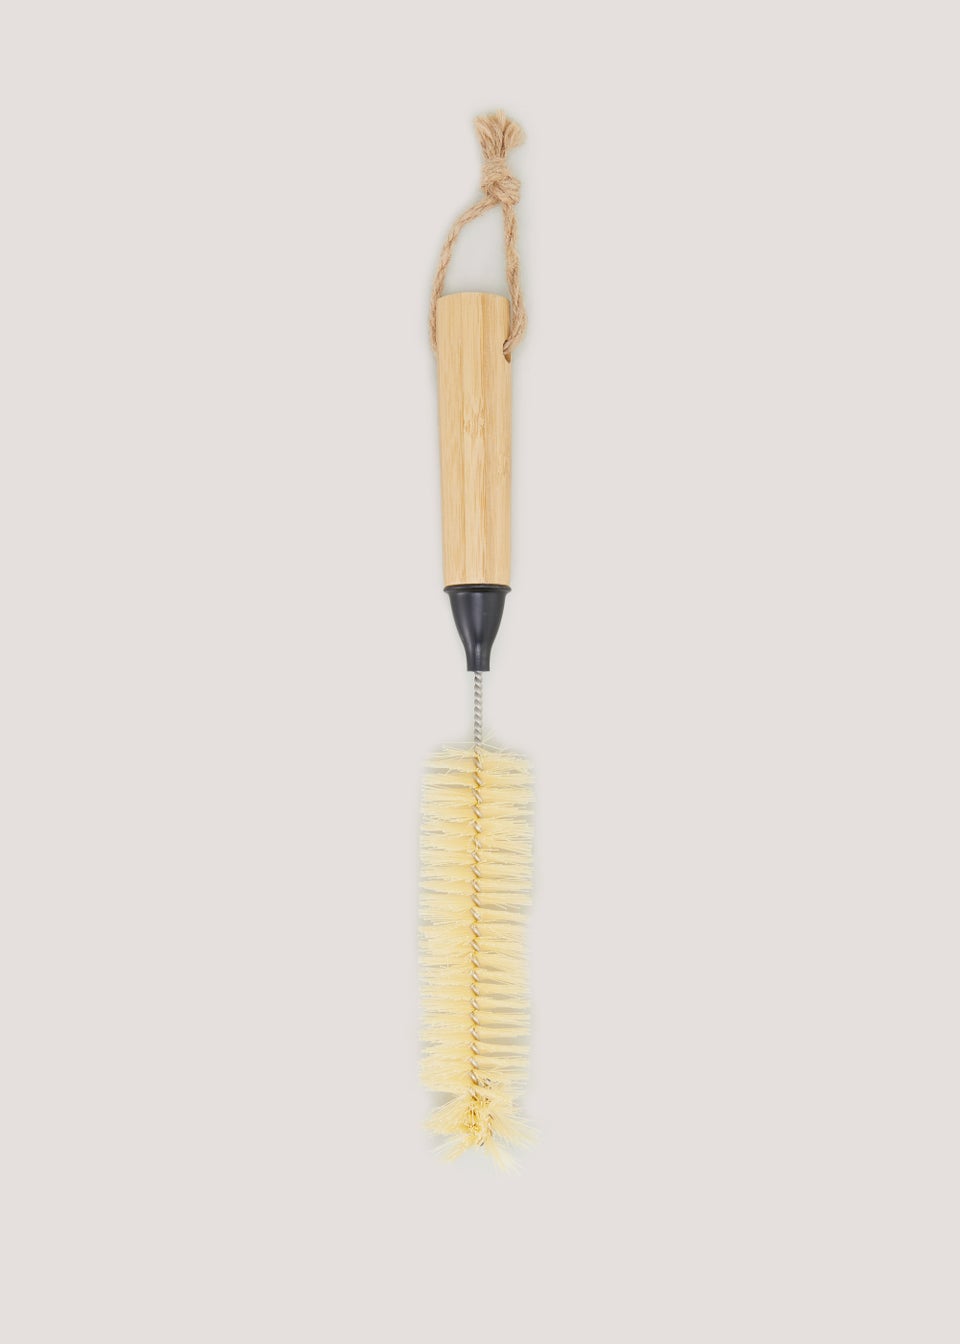 Wooden Bottle Brush (30cm x 2.5cm)